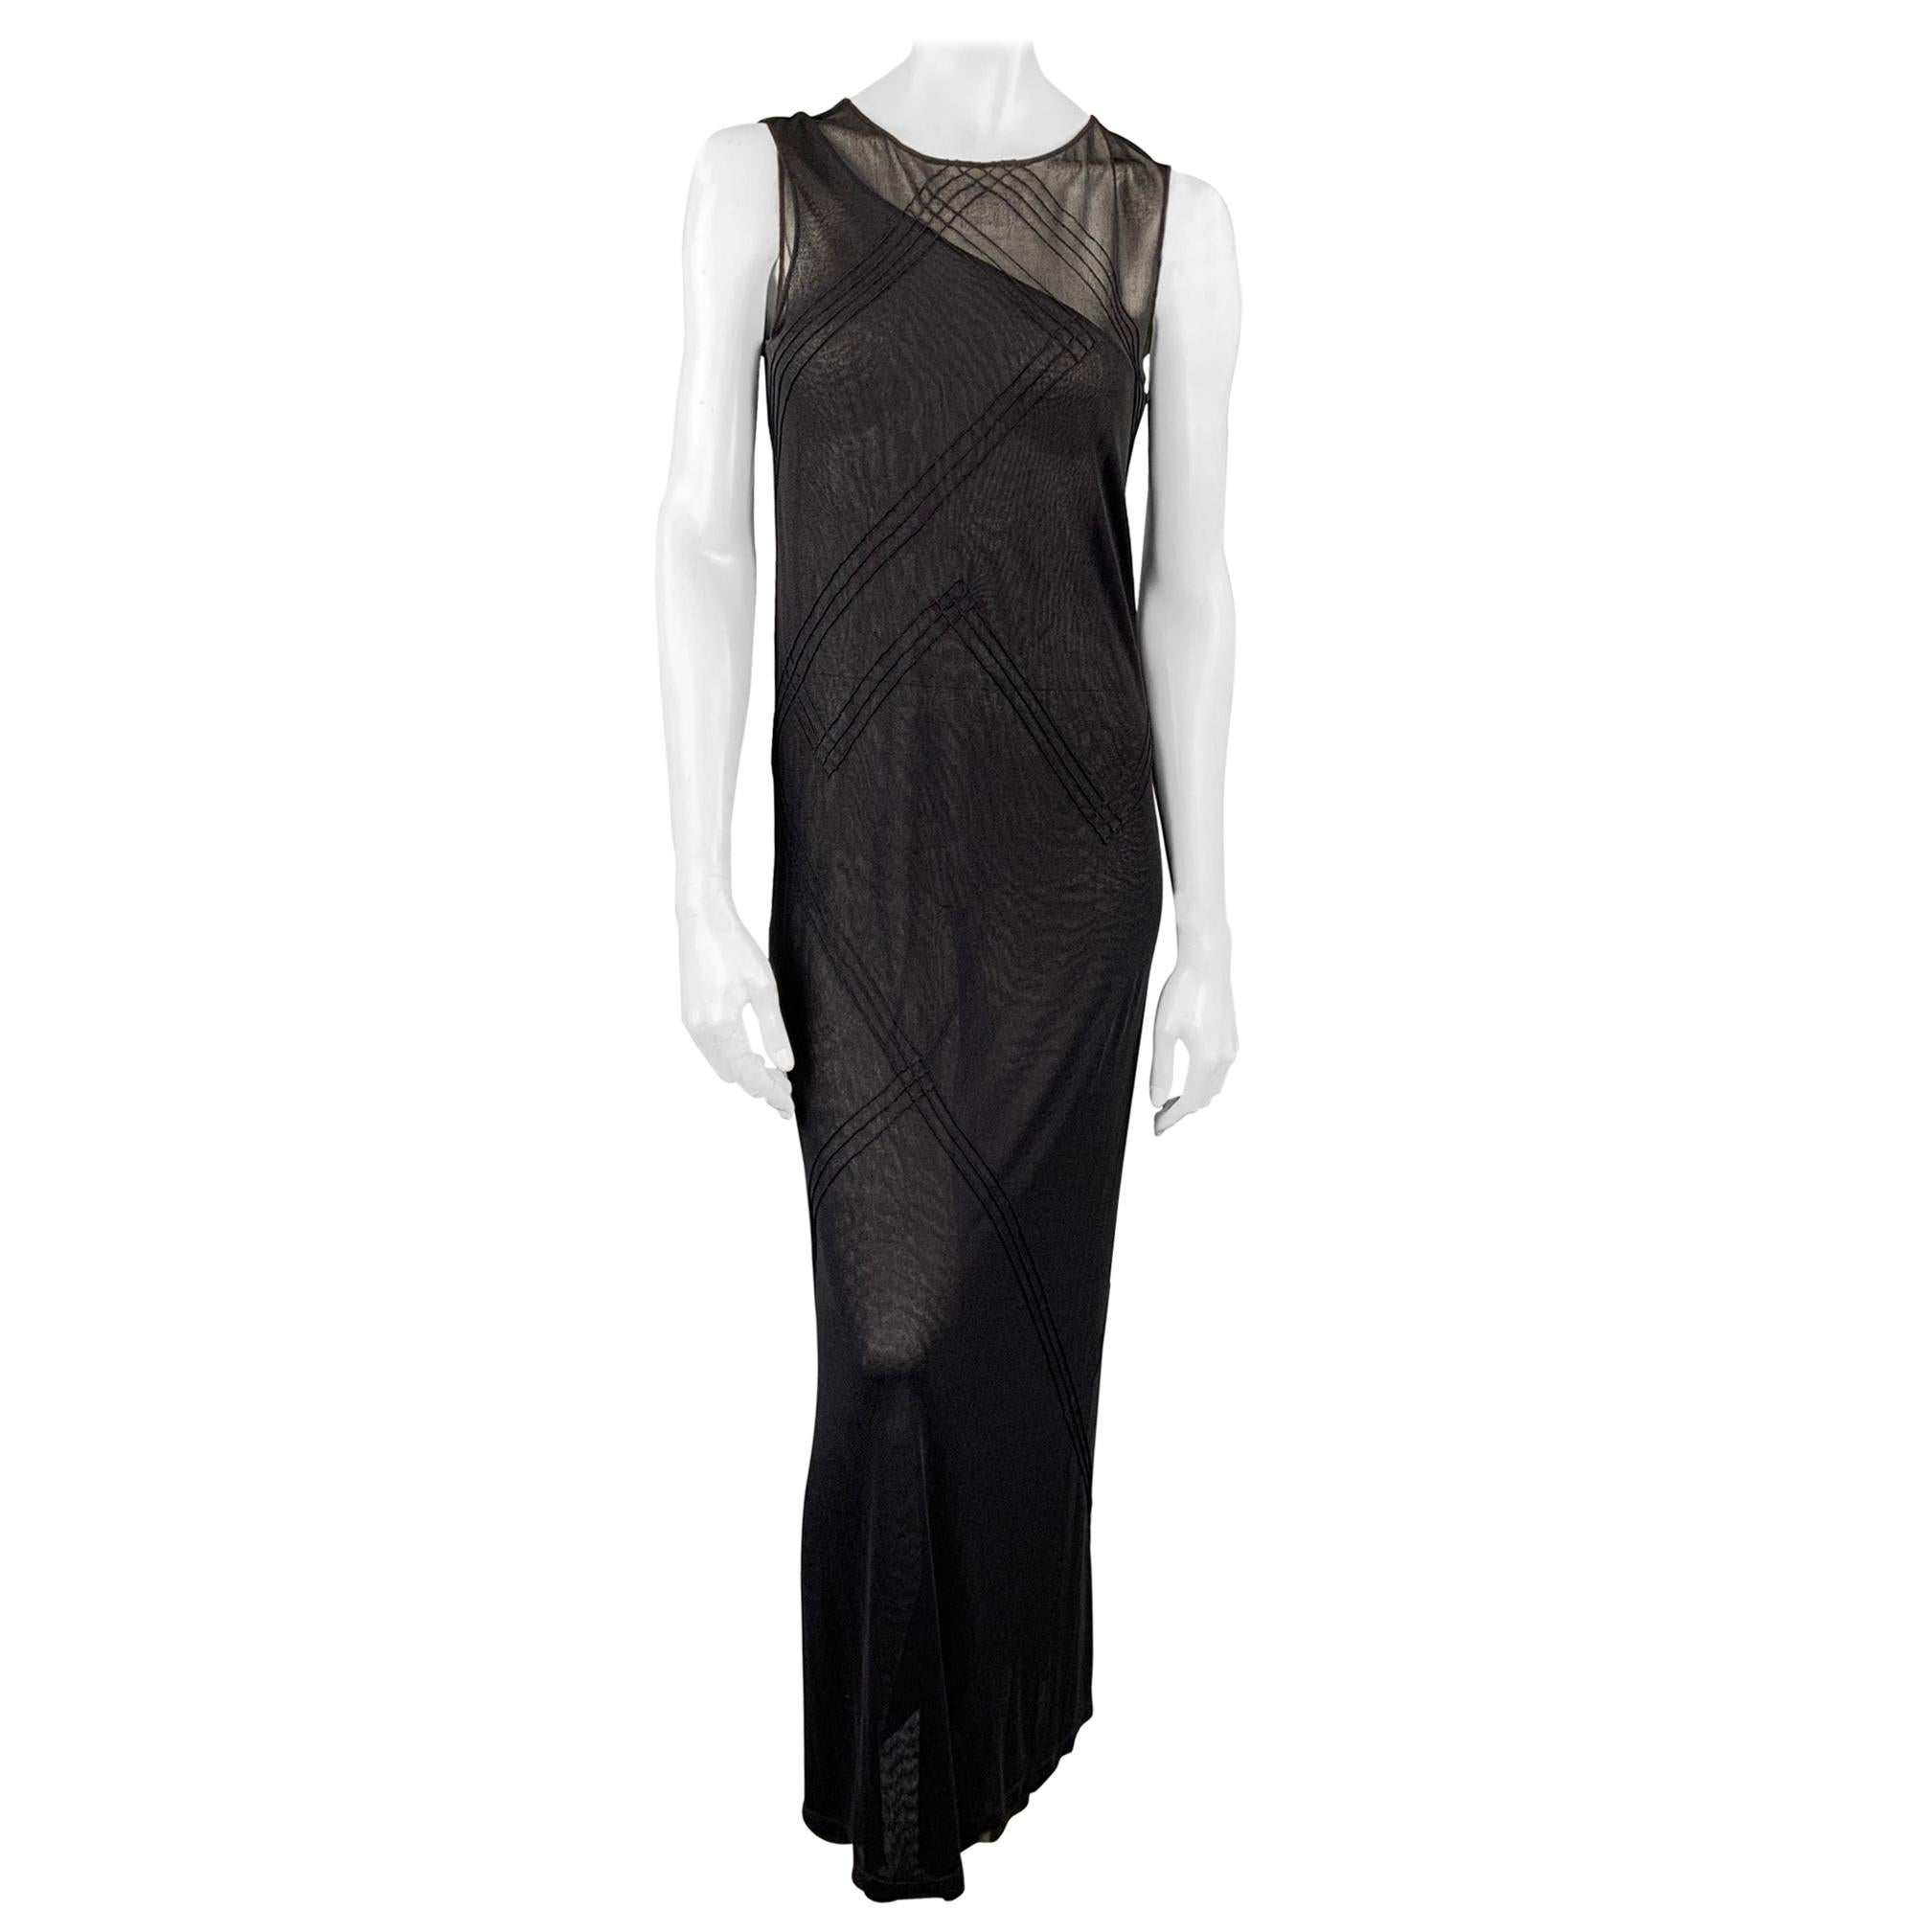 DONNA KARAN Size L Black Mesh Polyester / Rayon Shift Dress